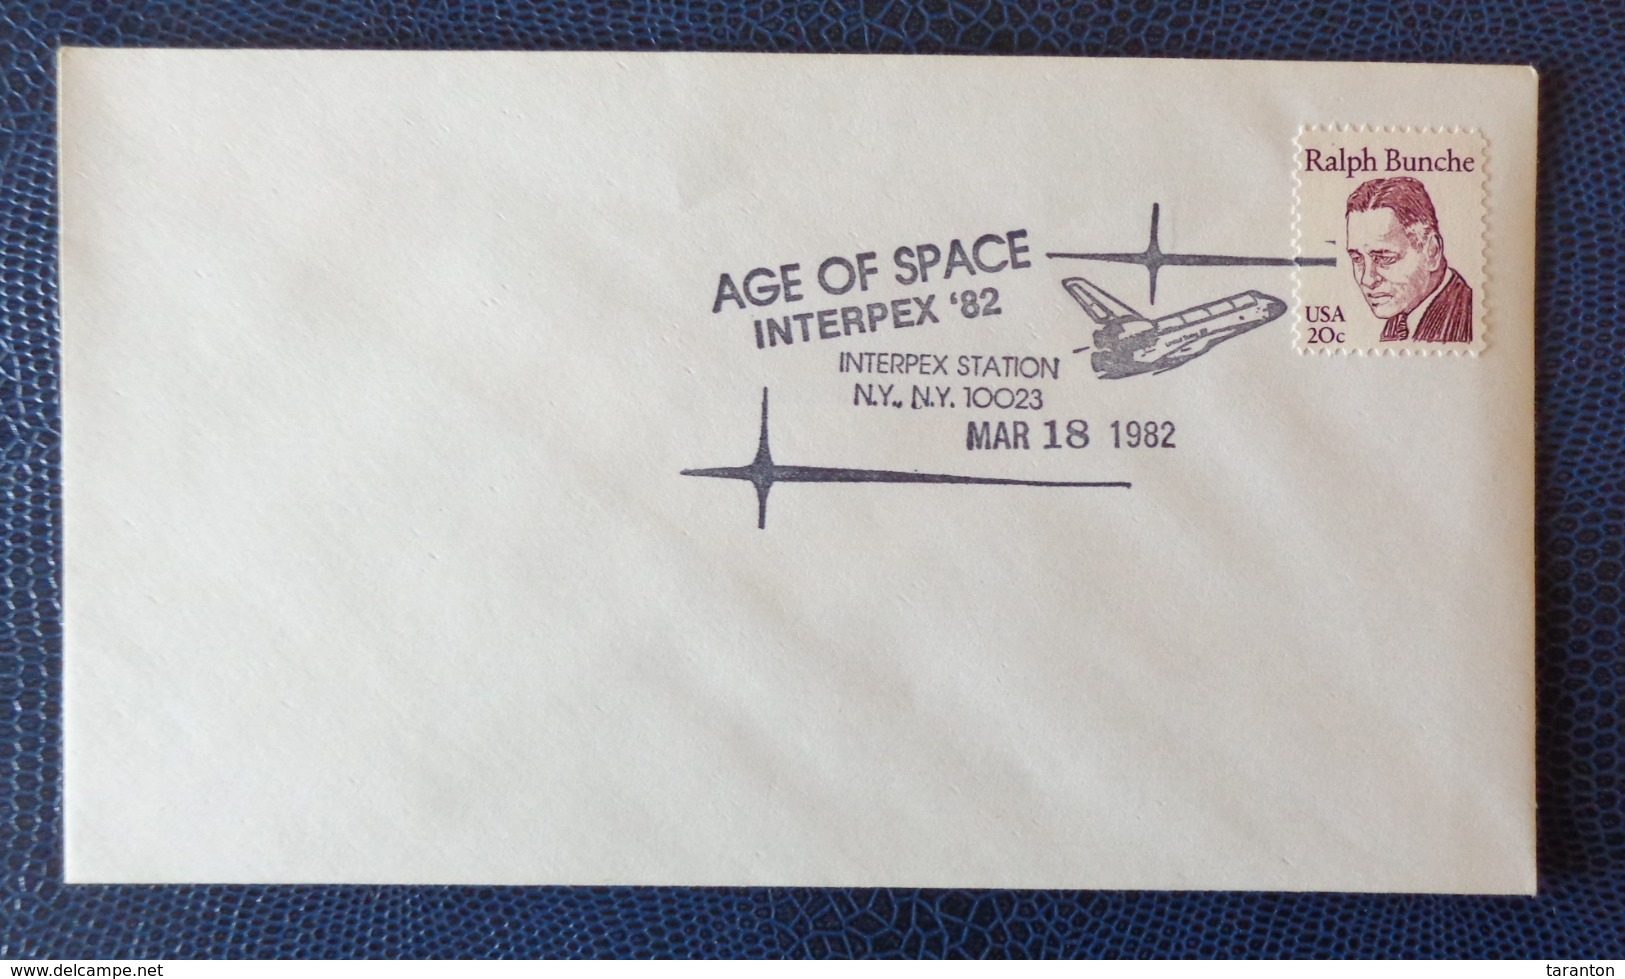 1982 - COVER - U.S.A. - NEW YORK - INTERPEX STA. - AGE OF SPACE, INTERPEX '82 - Collezioni